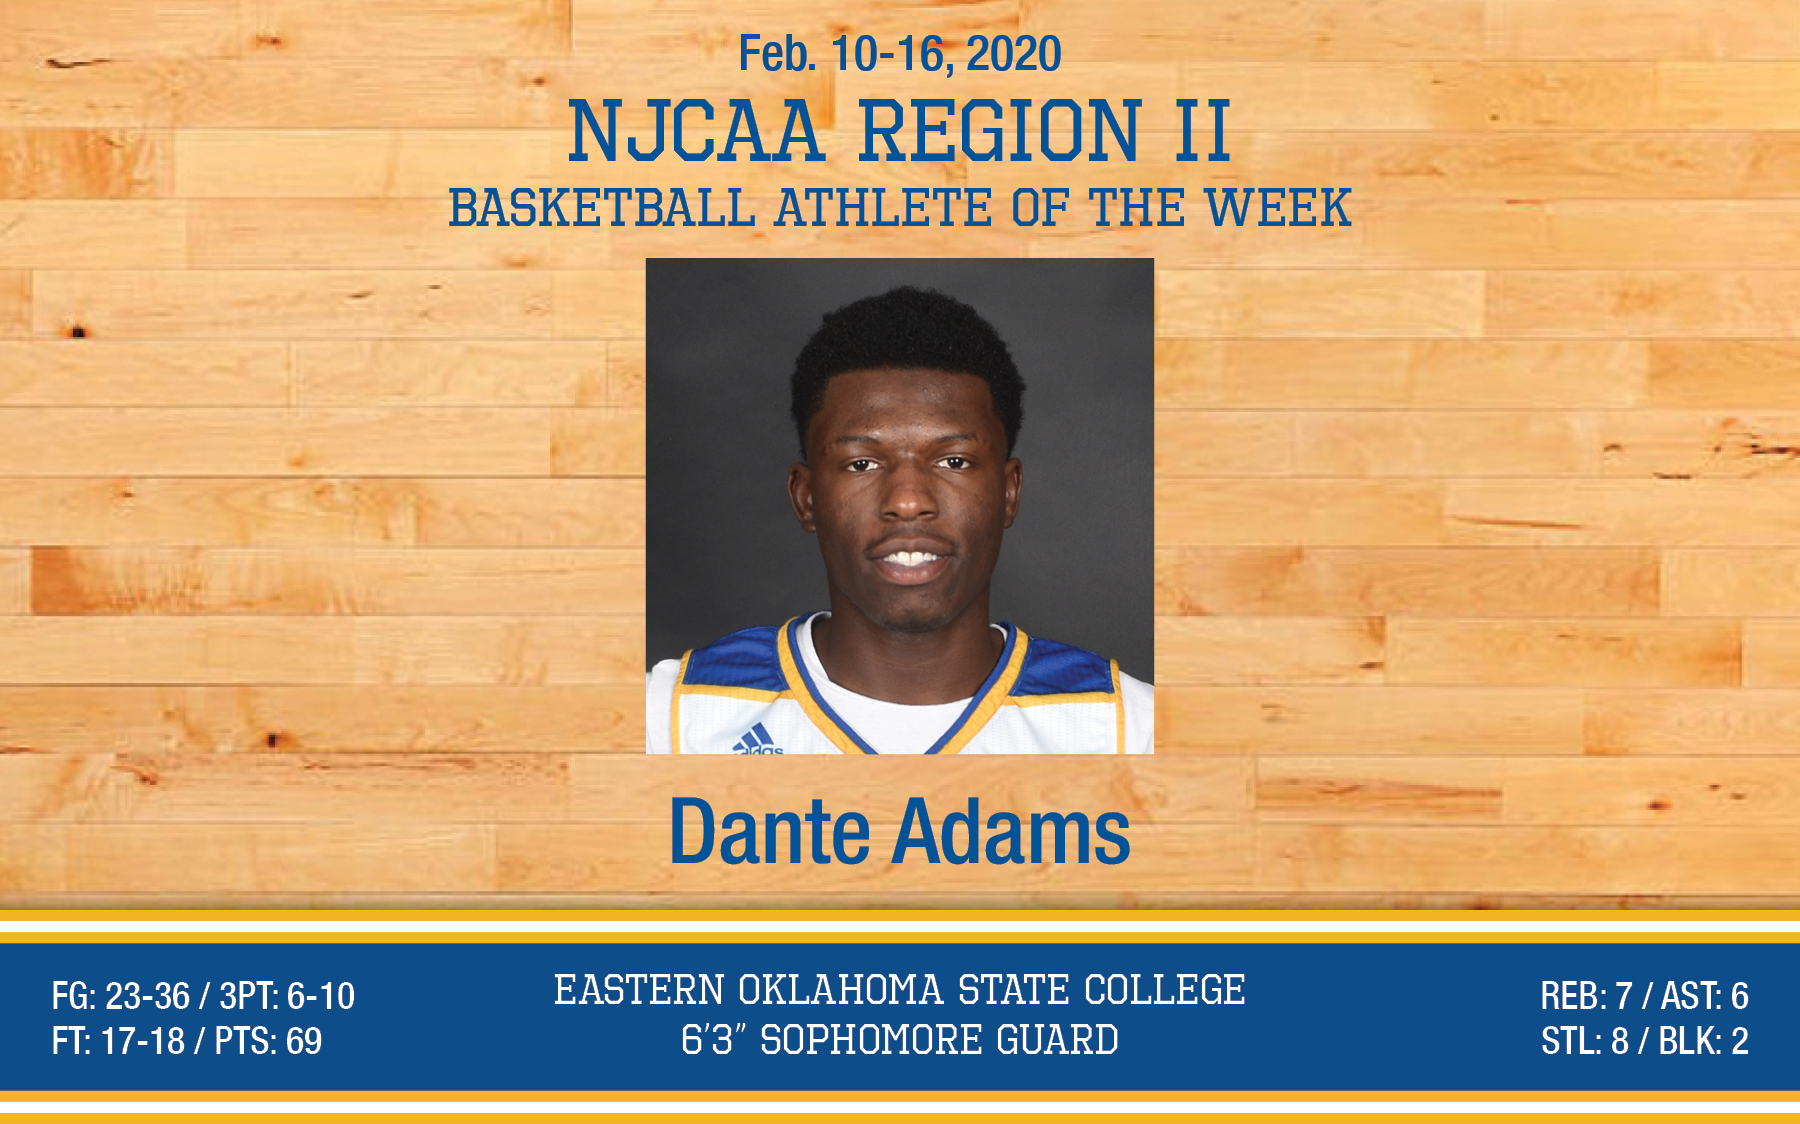 Dante Adams earns NJCAA Region II Player of the Week honors